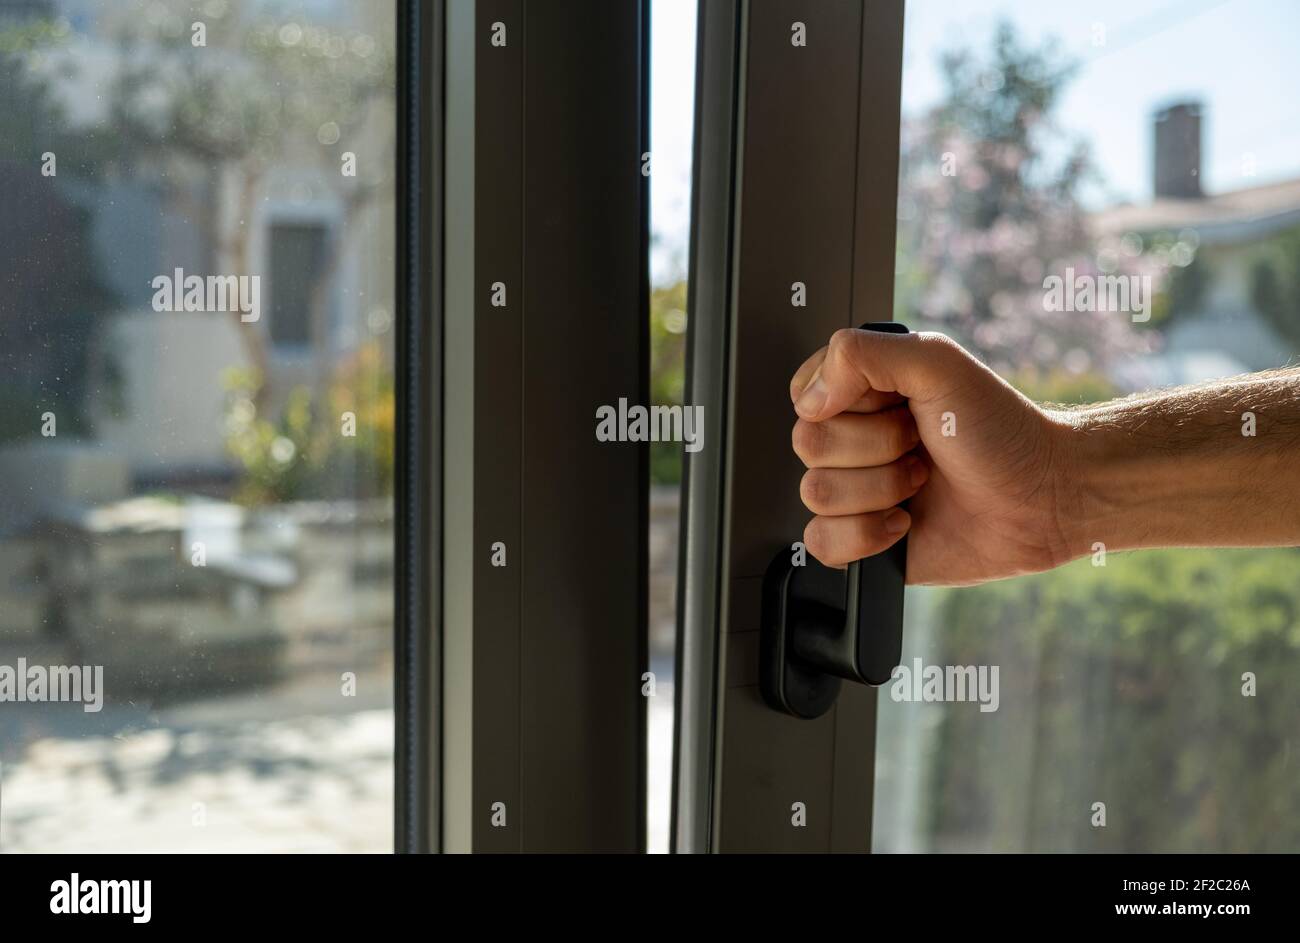 Kippen und drehen graue Farbe Aluminium-Fenster, Mann hält den Griff,  frische Luft für zu Hause. Männliche Hand vertikal offenes Metall- oder PVC- Fenster, Nahaufnahme Stockfotografie - Alamy